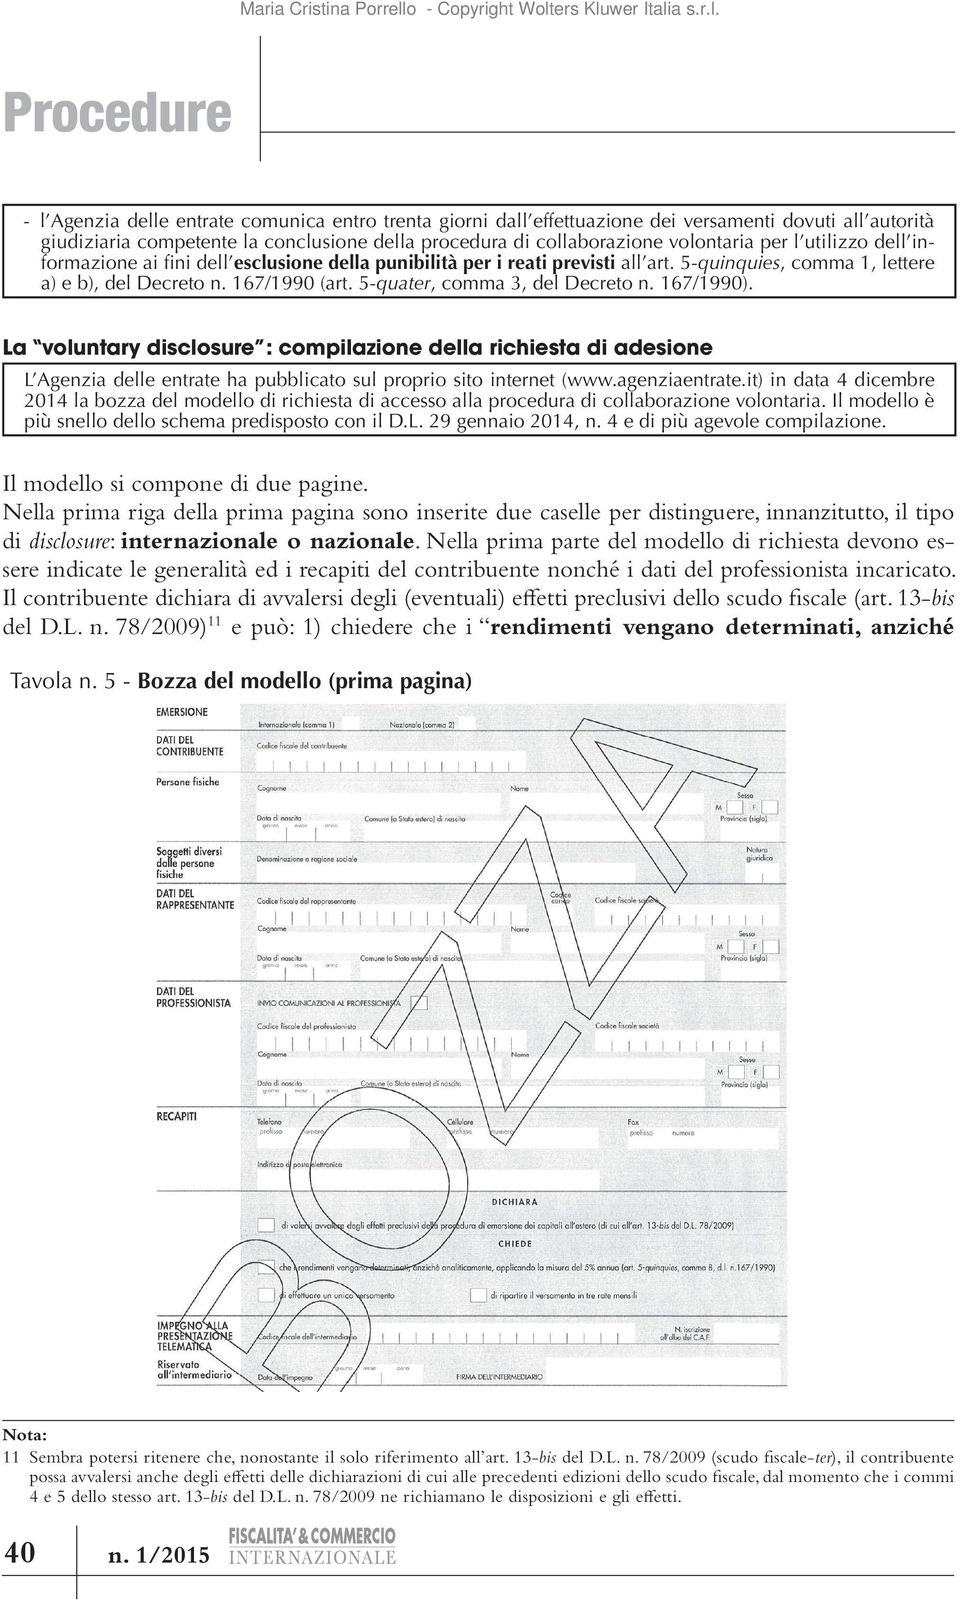 167/1990). La voluntary disclosure : compilazione della richiesta di adesione L Agenzia delle entrate ha pubblicato sul proprio sito internet (www.agenziaentrate.